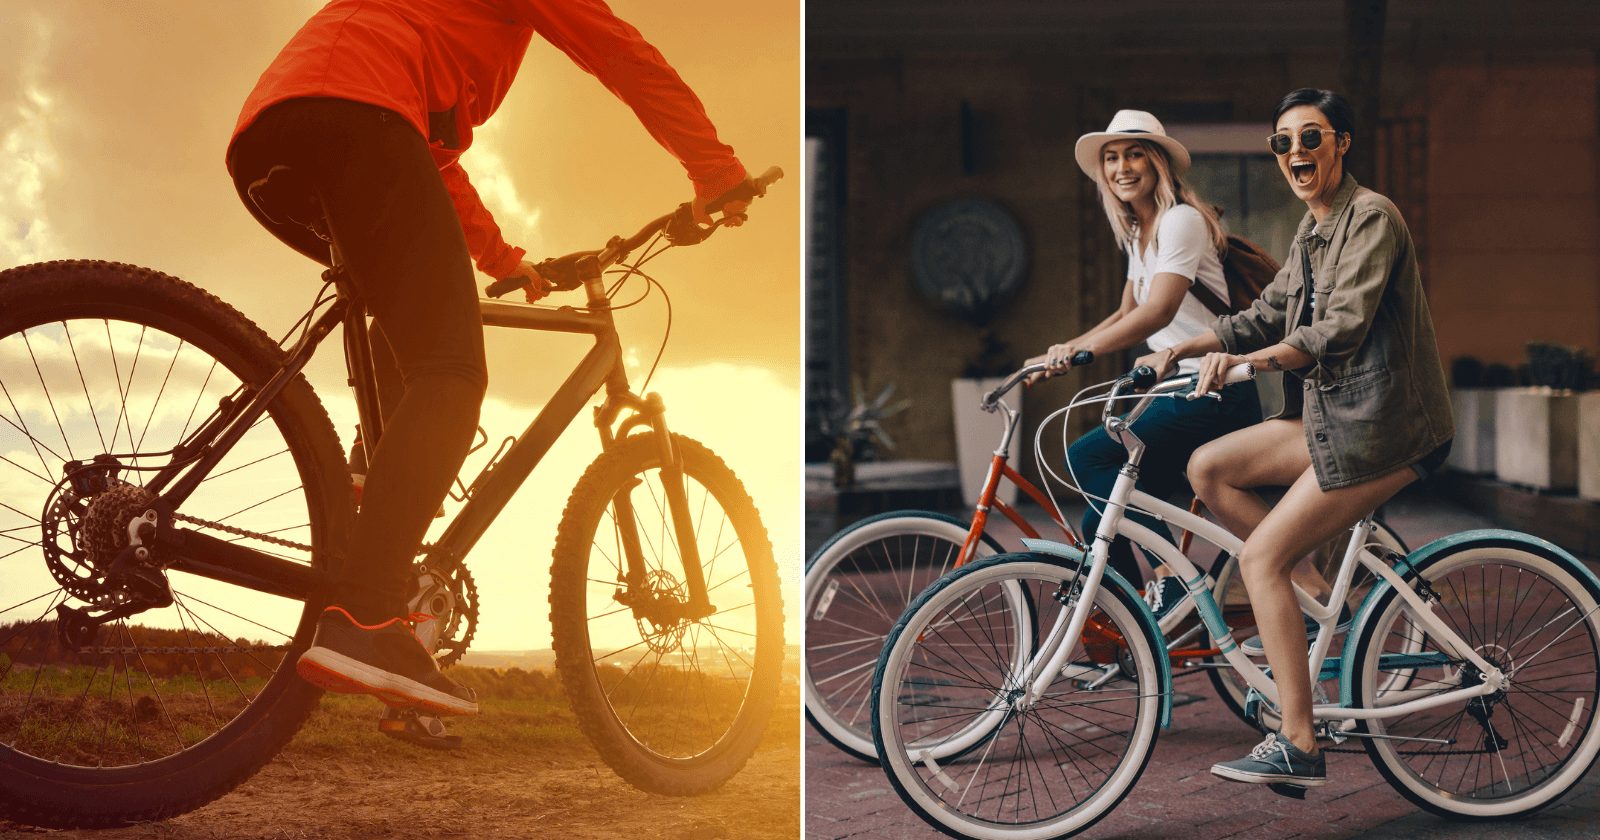 70 legendas para fotos andando de bicicleta ficarem ainda mais estilosas